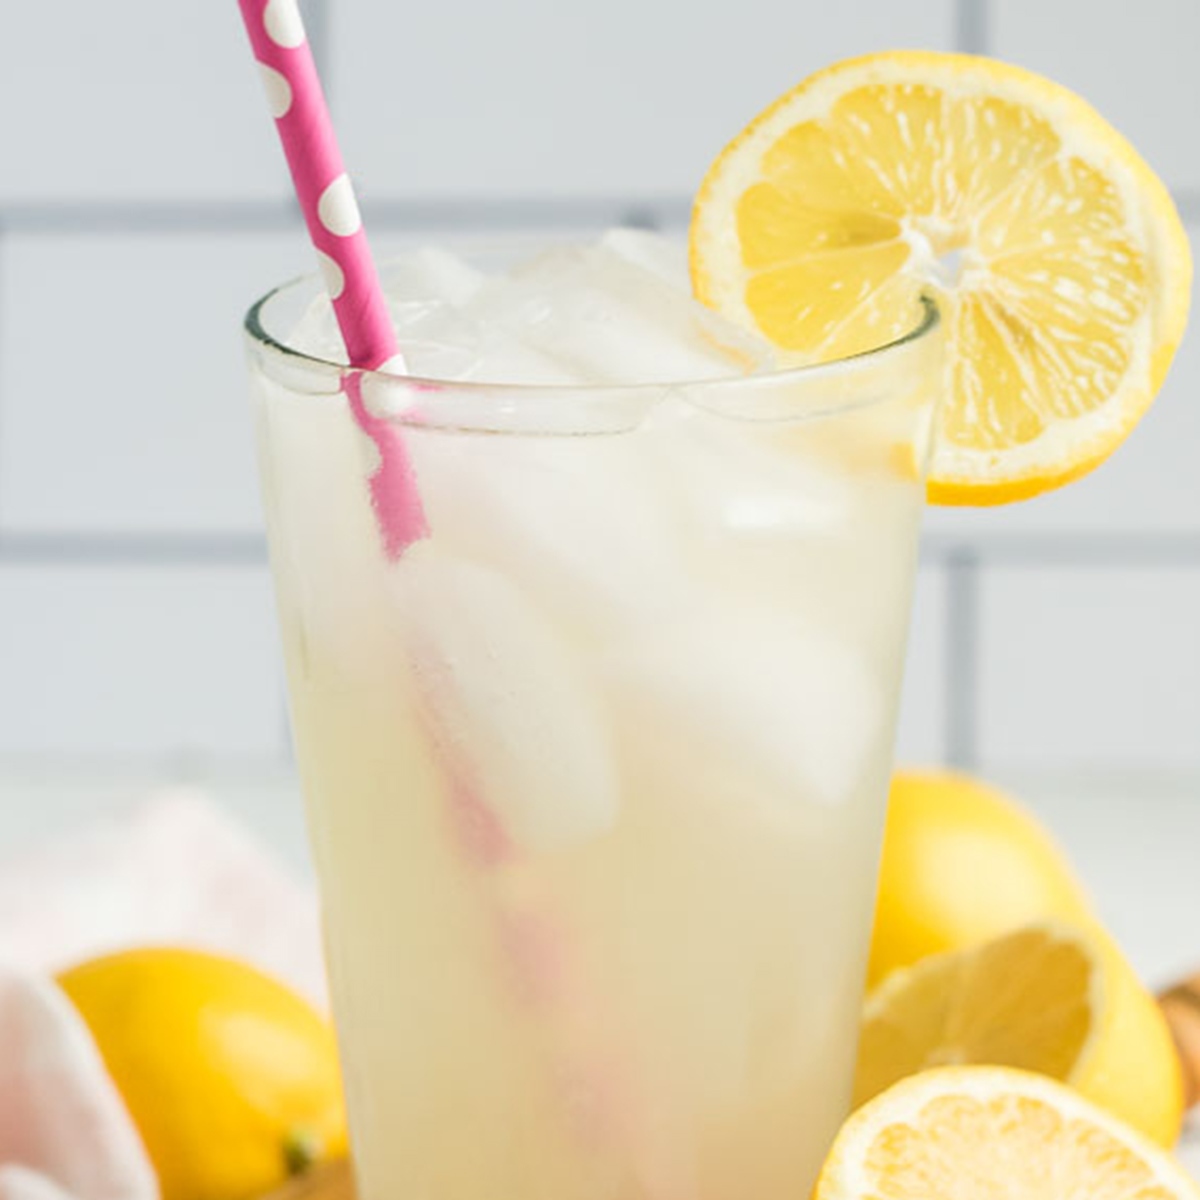 How To Make A Glass Of Lemonade